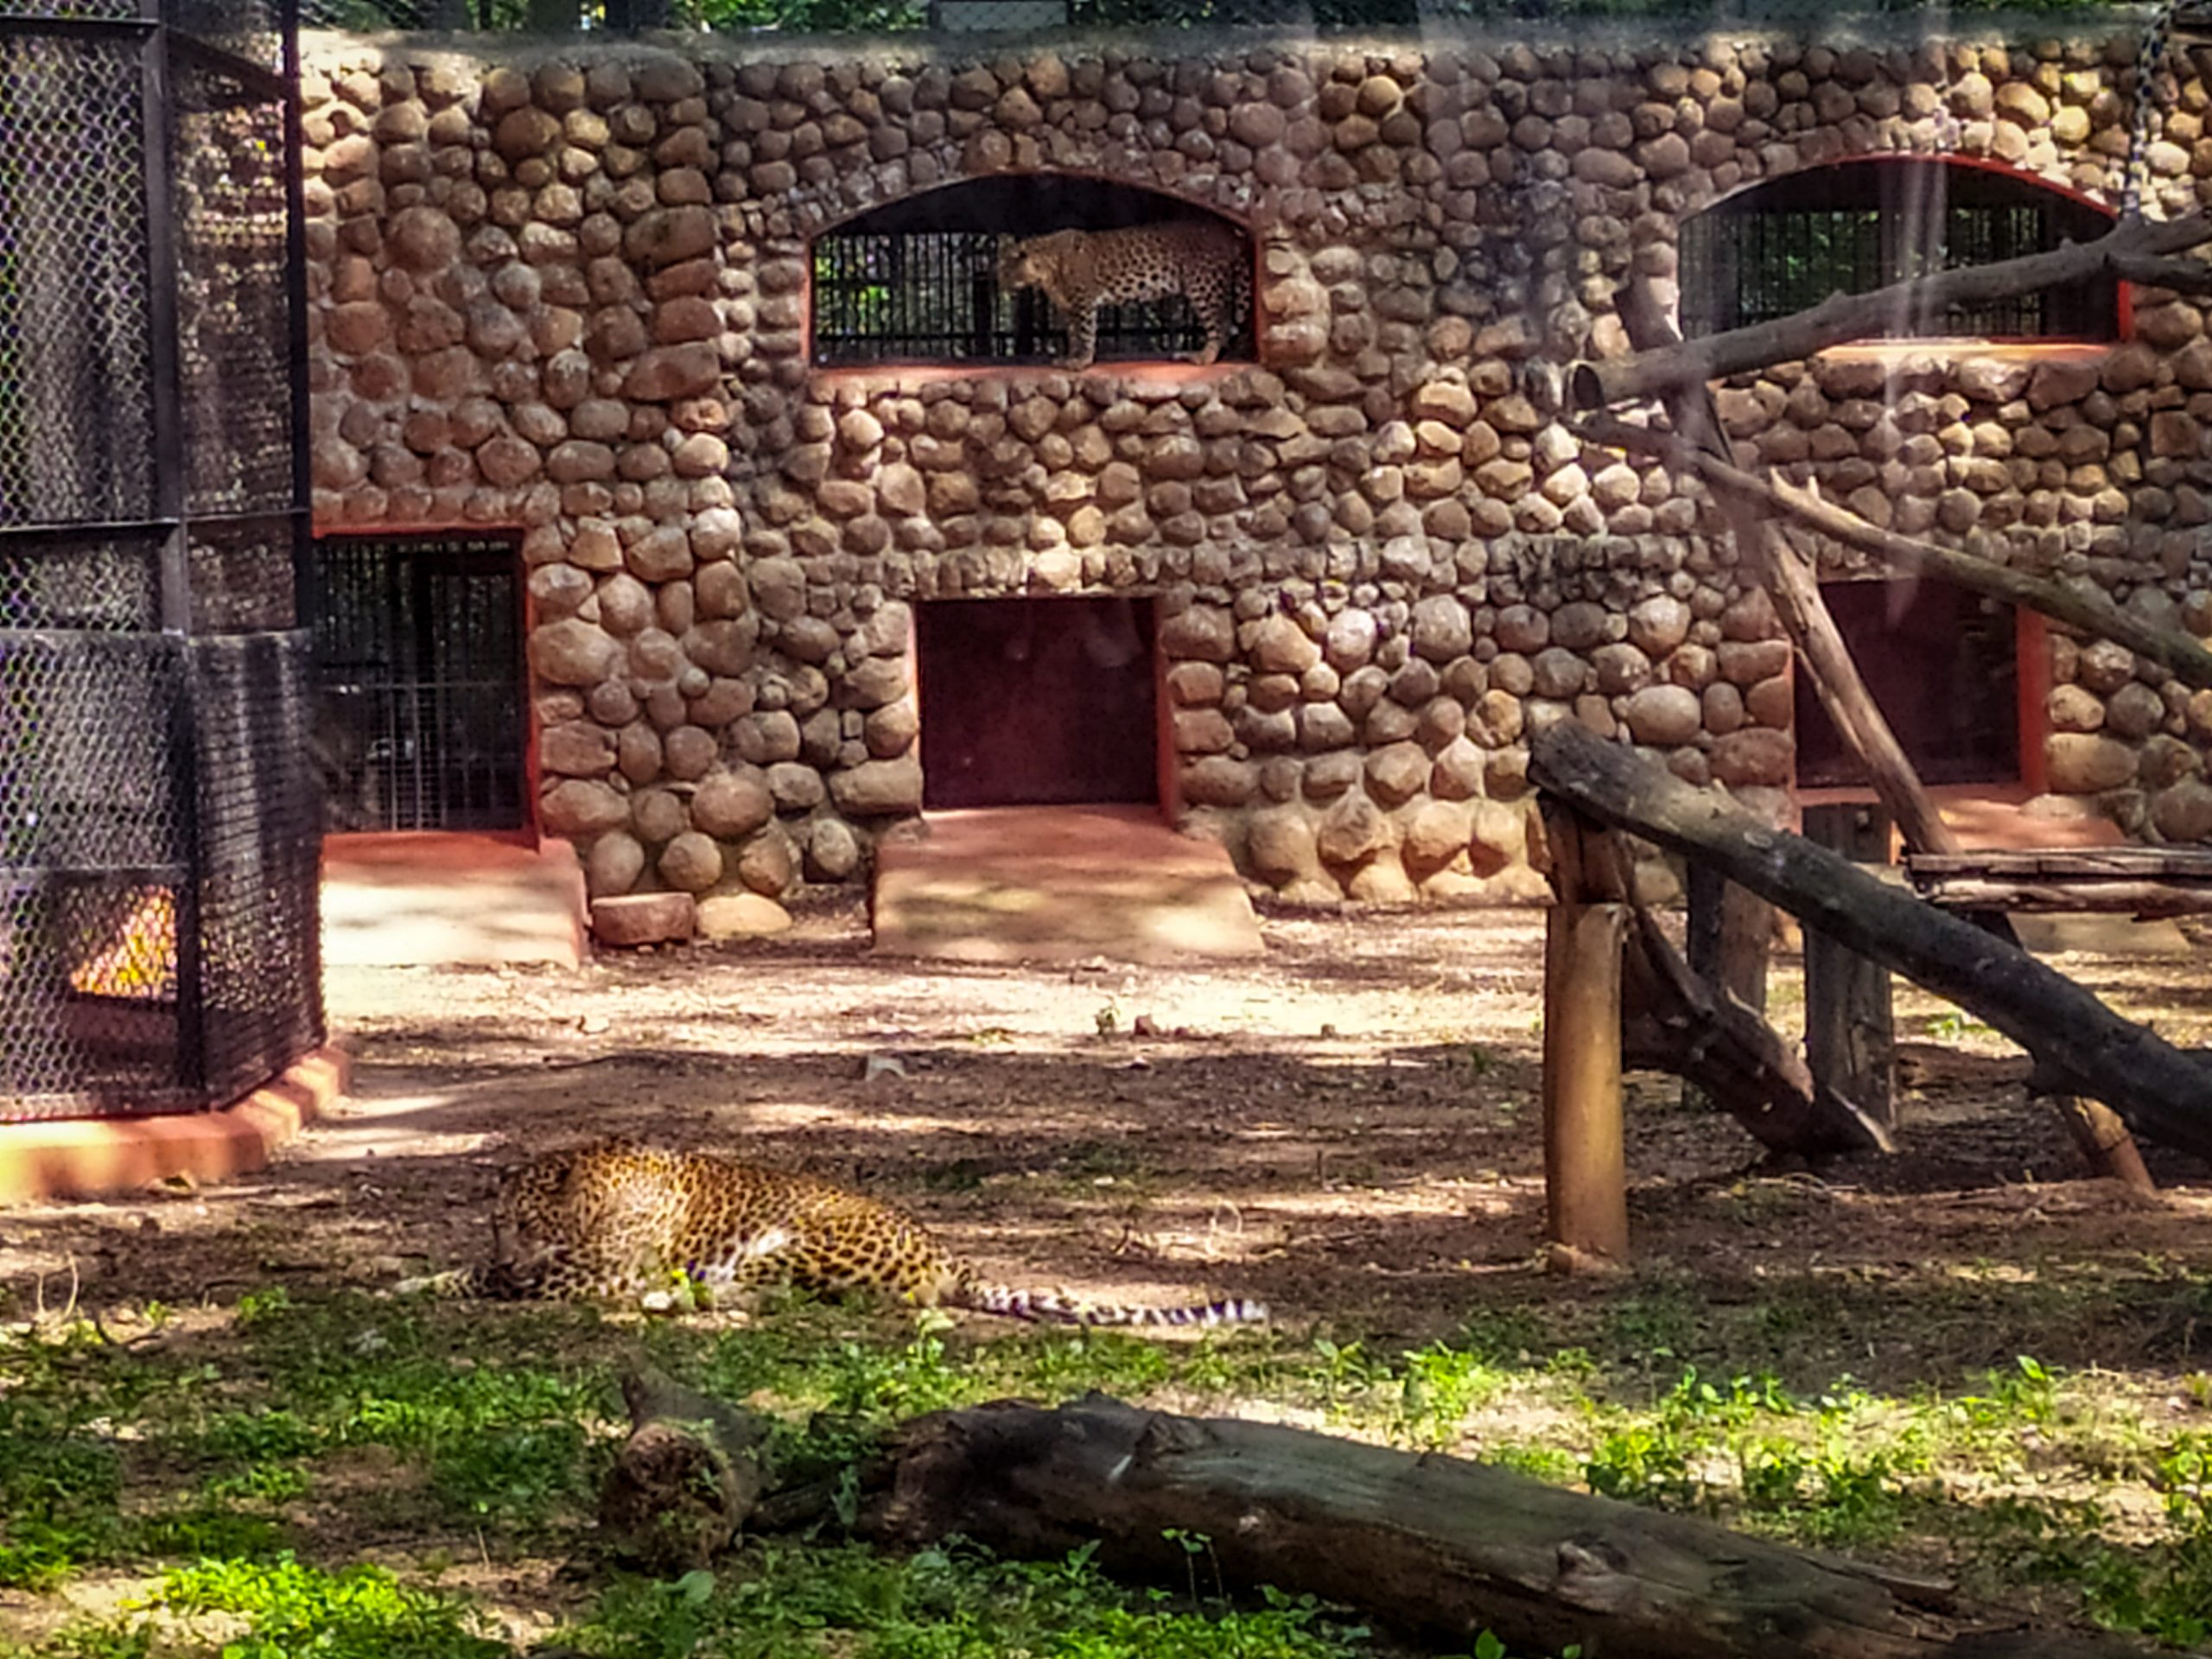 Cheetah in a zoo